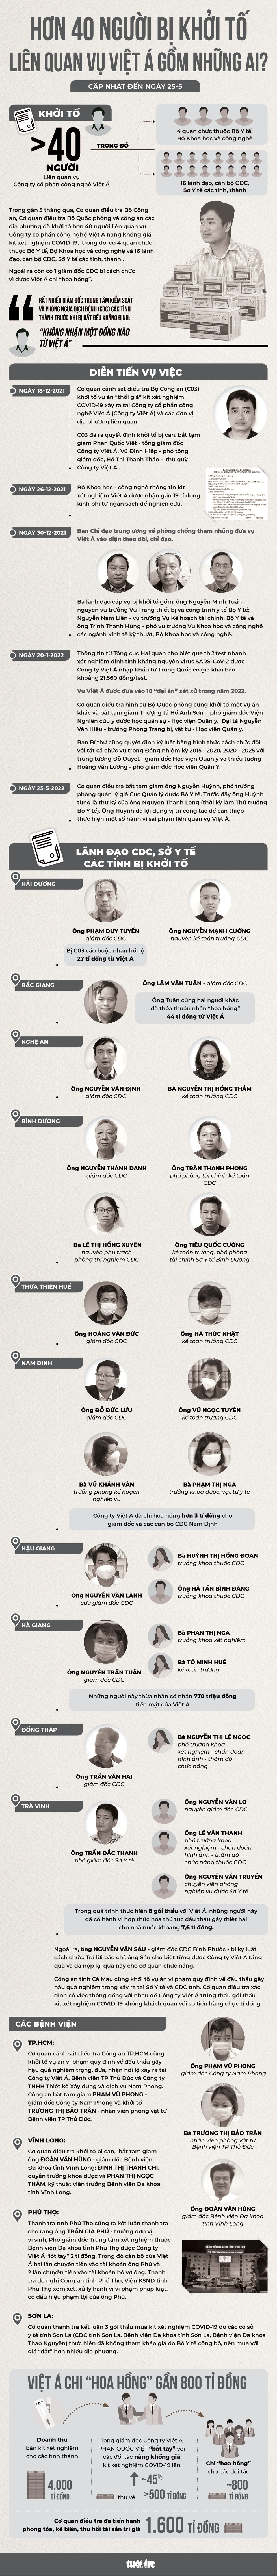 Hơn 40 người bị khởi tố liên quan vụ Việt Á gồm những ai? - Ảnh 1.